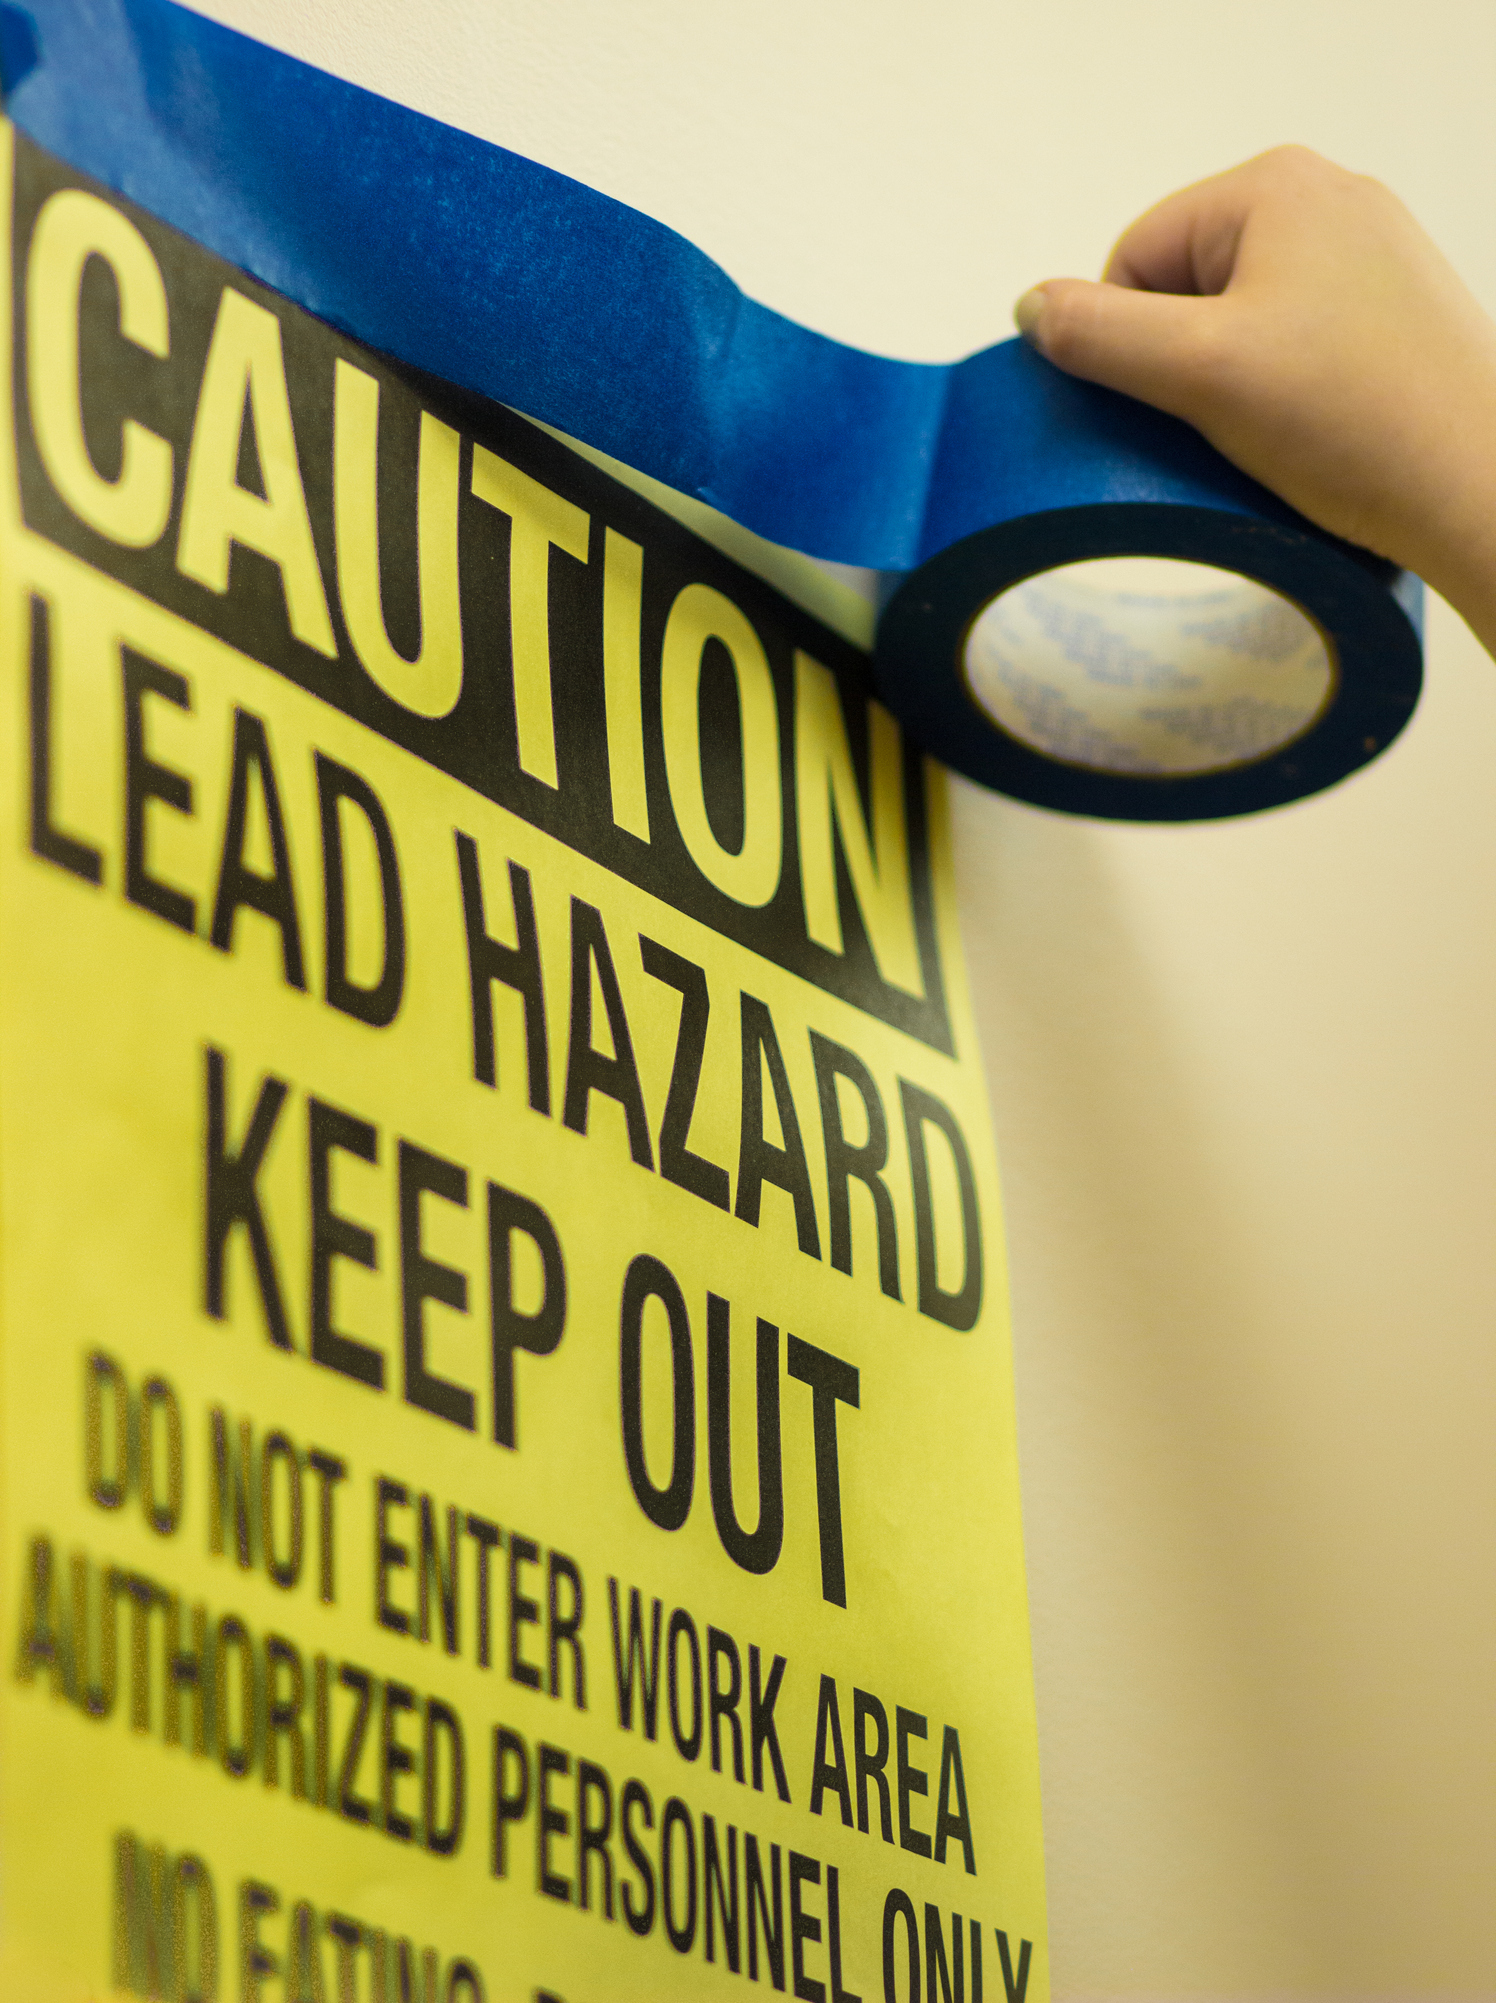 Lead Paint Hazard Warning